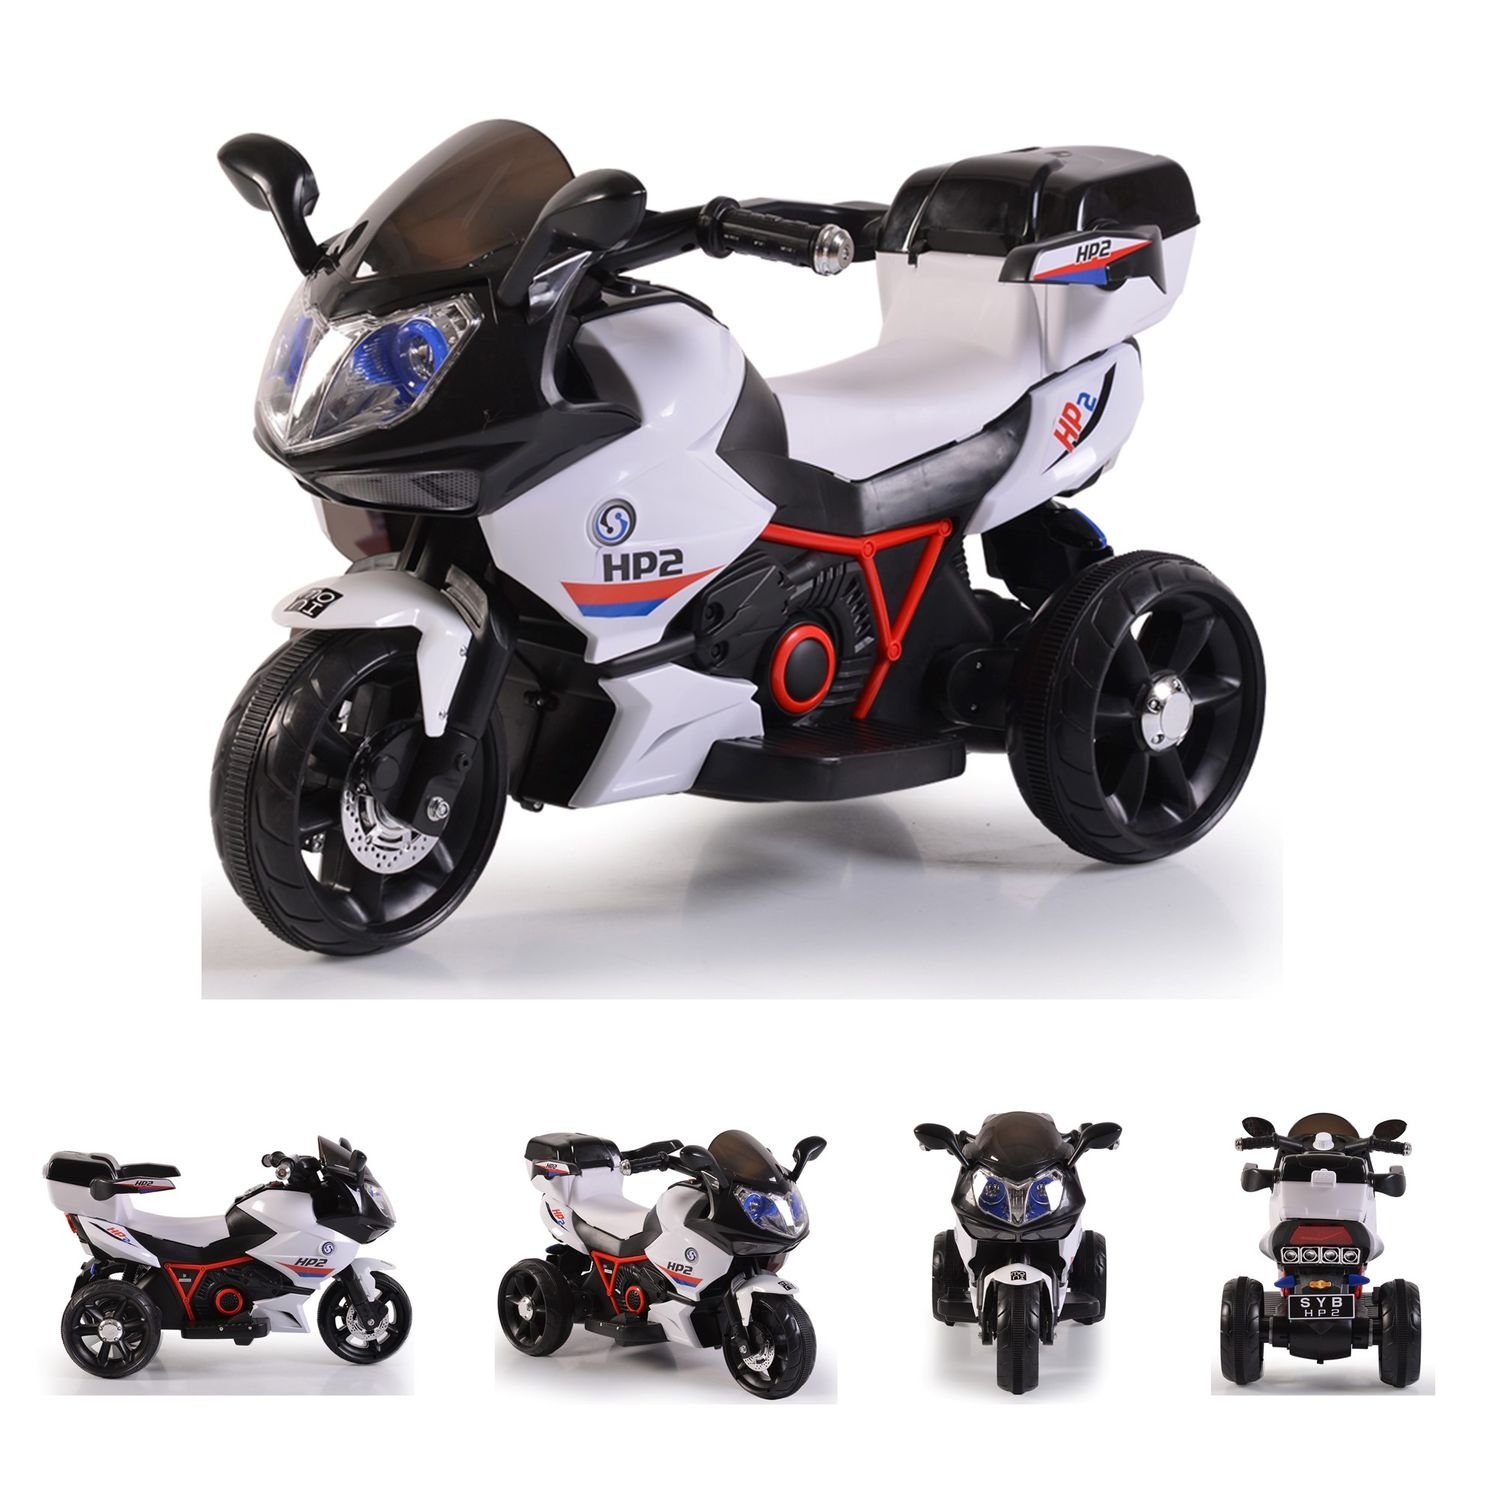 Moni Elektro-Kindermotorrad Kinder Elektromotorrad HP2 FB-6187, Belastbarkeit 30 kg, mit Musikfunktion, Spielzeugkorb, ab 3 Jahre